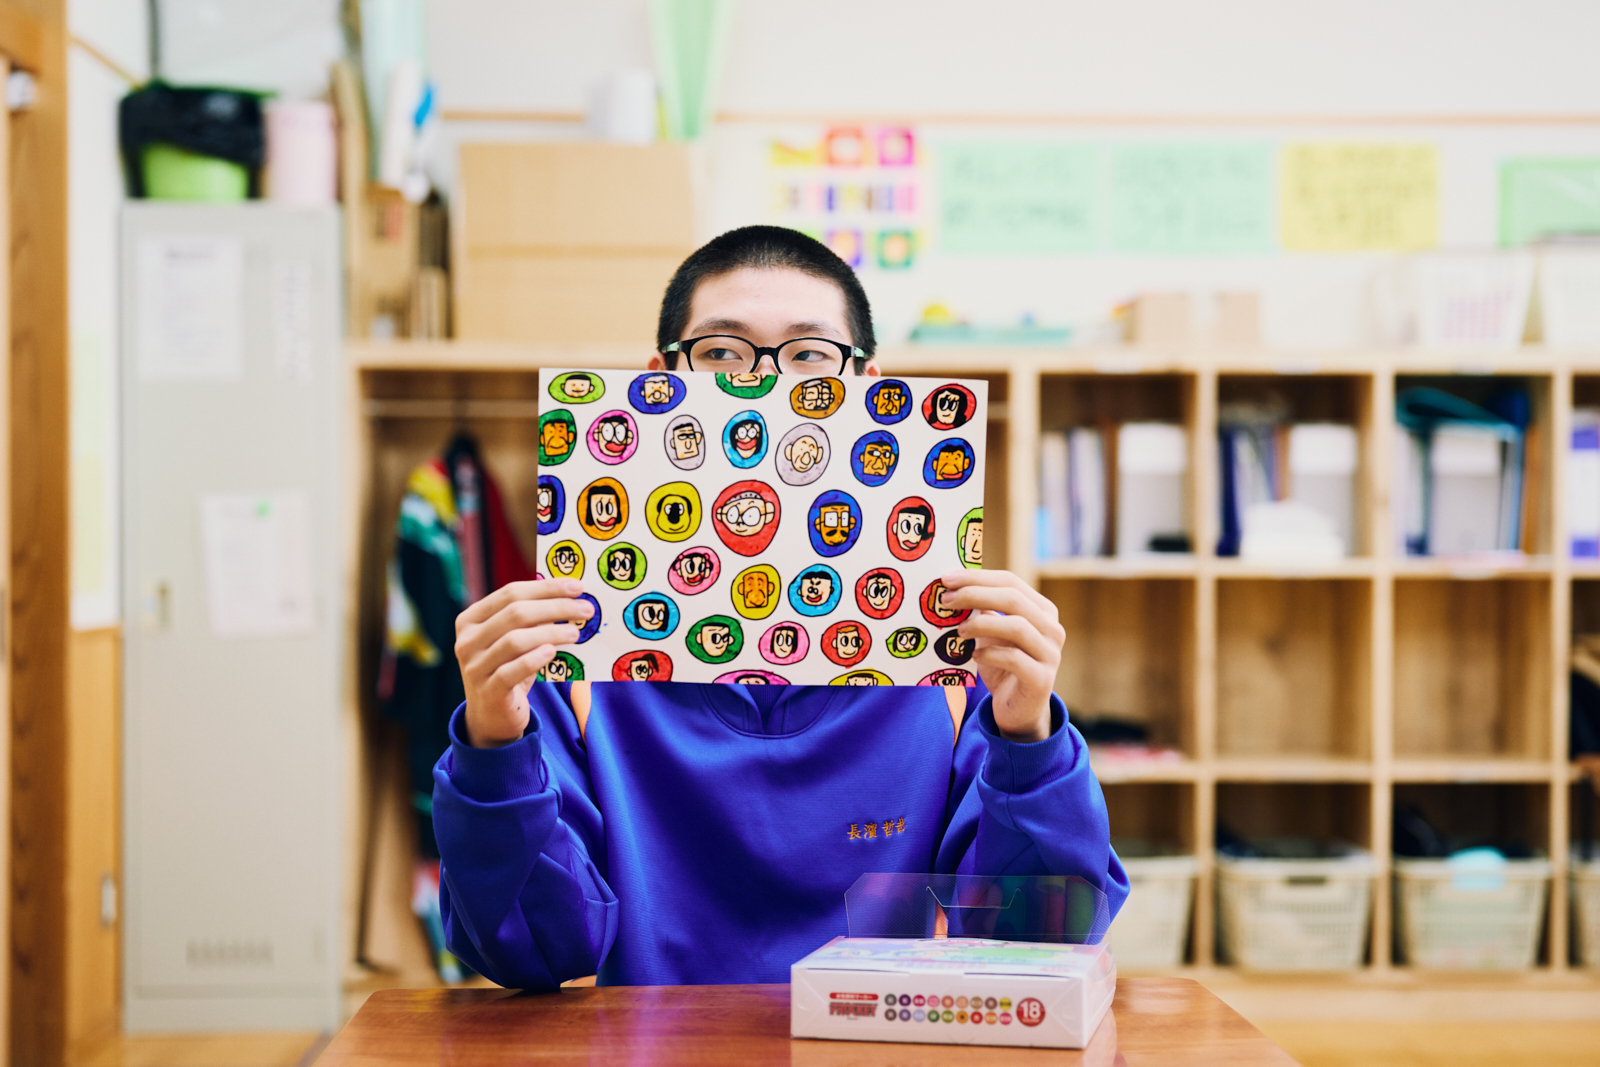 【写真】山形県立村山支援学校本校教室内にある机につき、両手で持った絵の作品から顔を覗かせる、生徒の長濱哲哉さん。